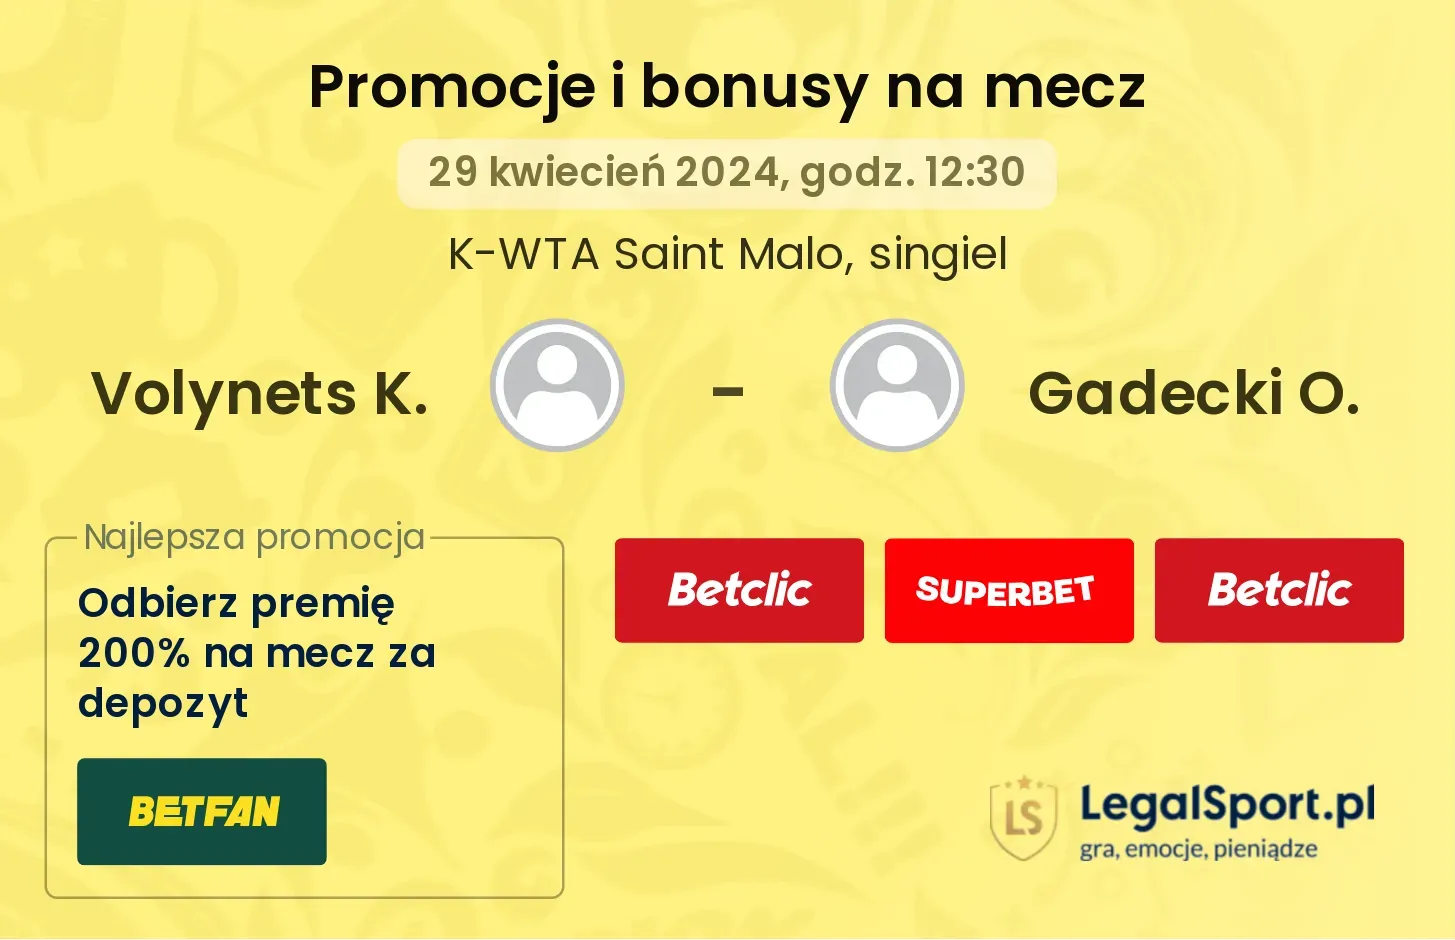 Volynets K. - Gadecki O. promocje bonusy na mecz